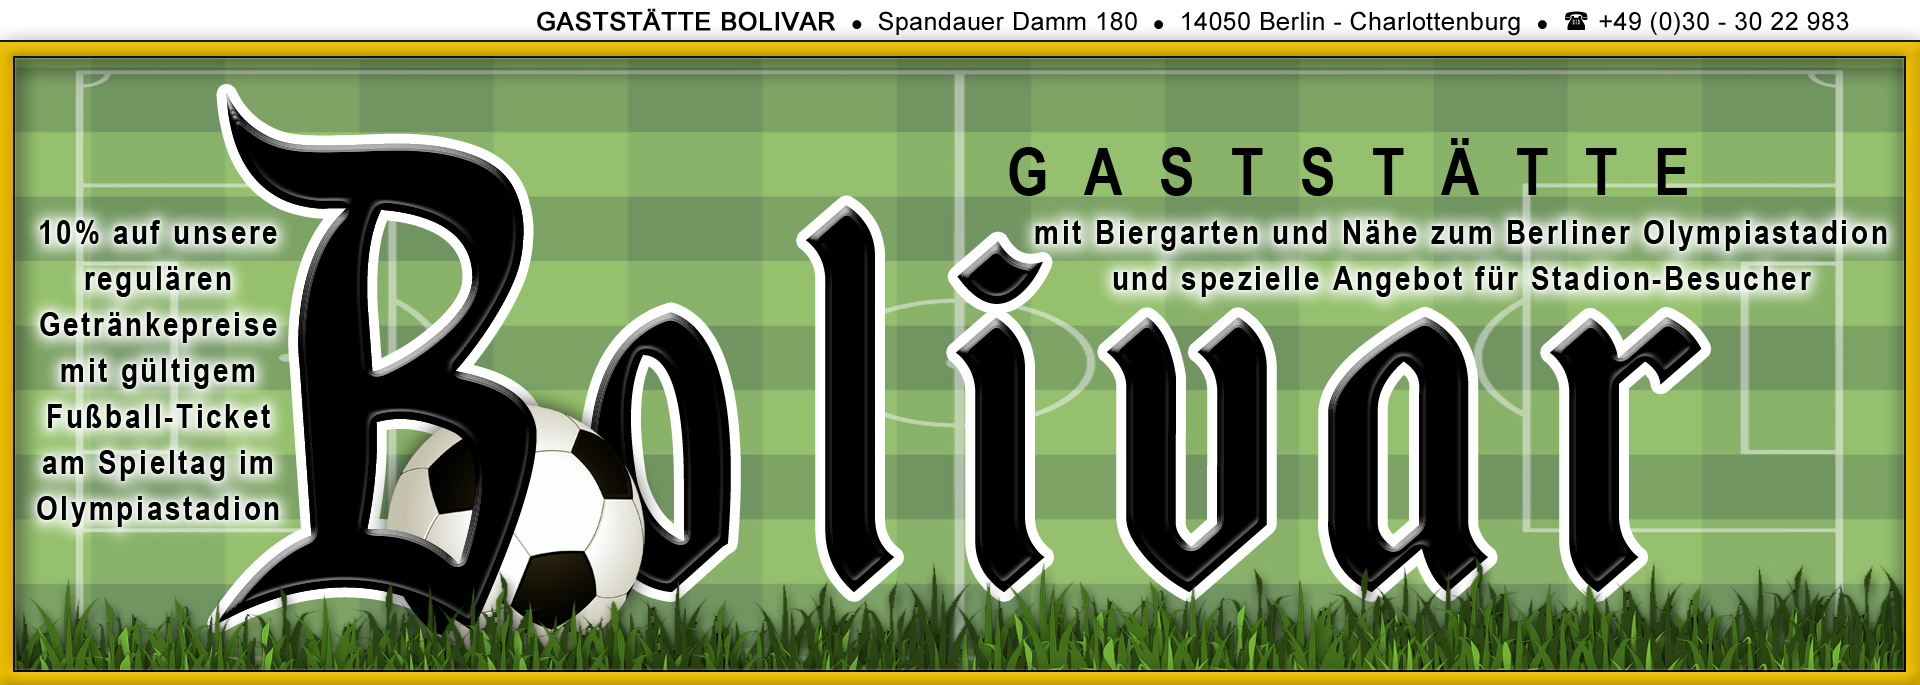 bolivar-gaststaette-lokal-imbiss-restaurant-essen-bier-trinken-gartenlokal-biergarten-berlin-charlottenburg-bundes-liga-fussball-naehe-olympiastadion-fan-treff